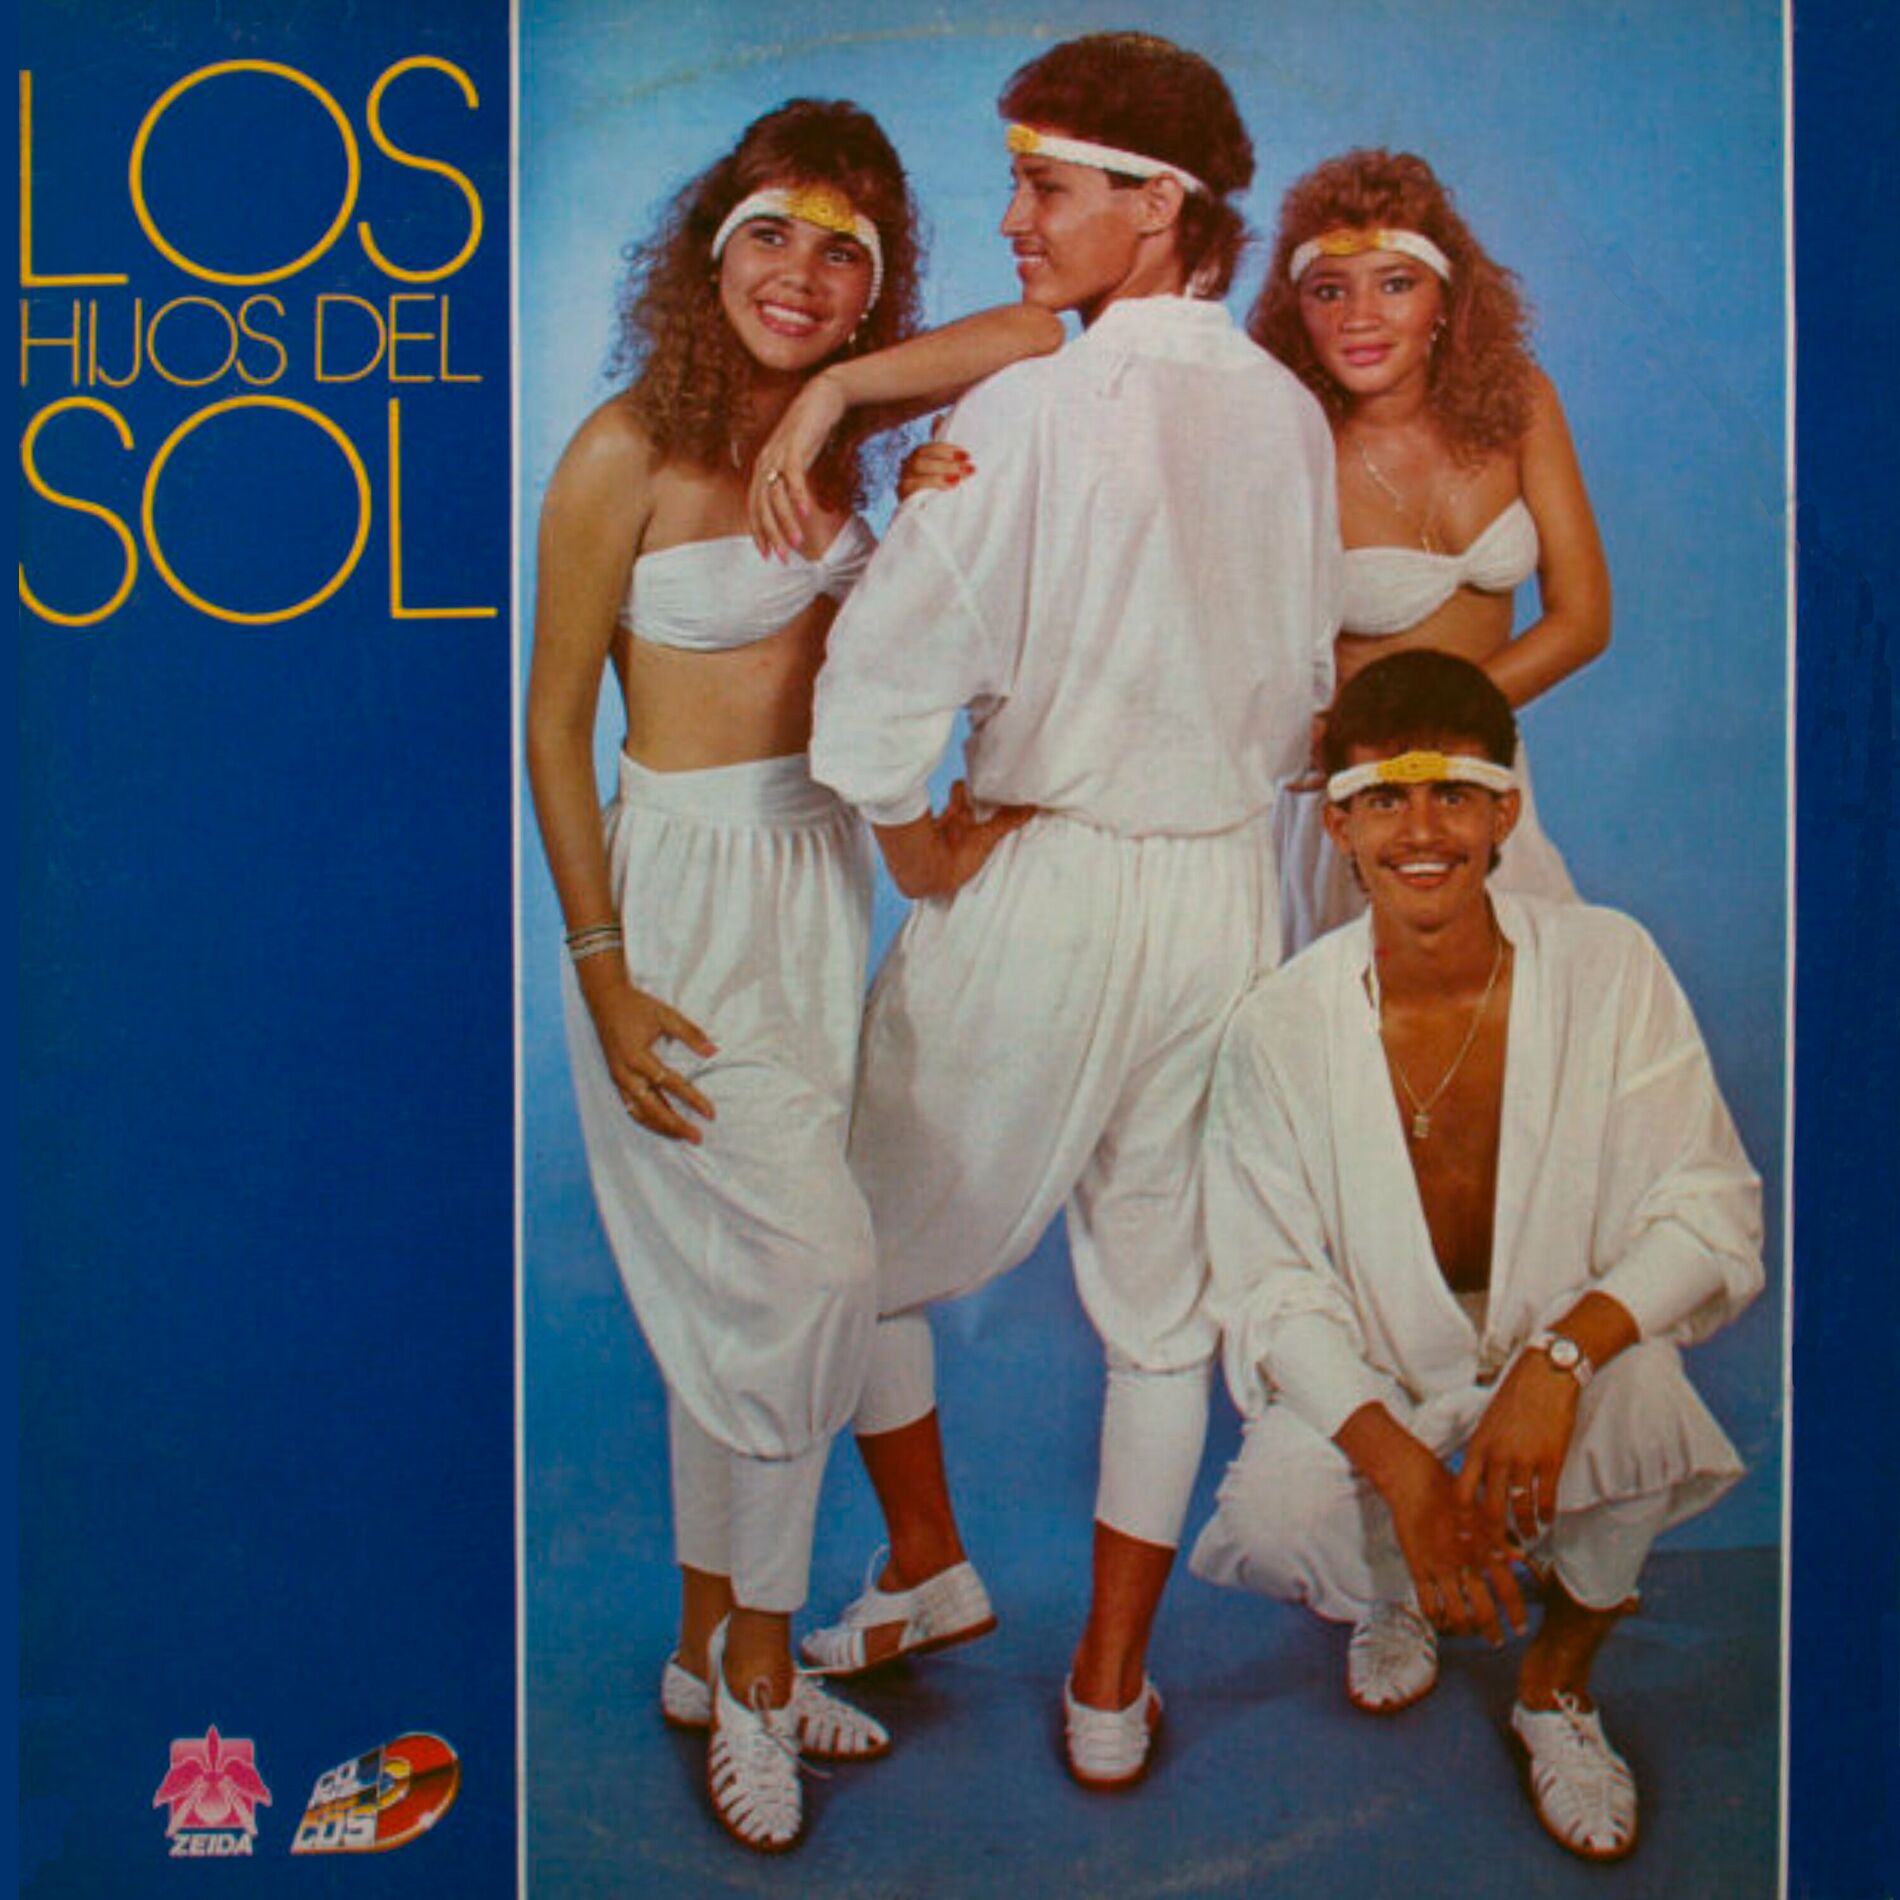 Los Hijos del Sol: albums, songs, playlists | Listen on Deezer